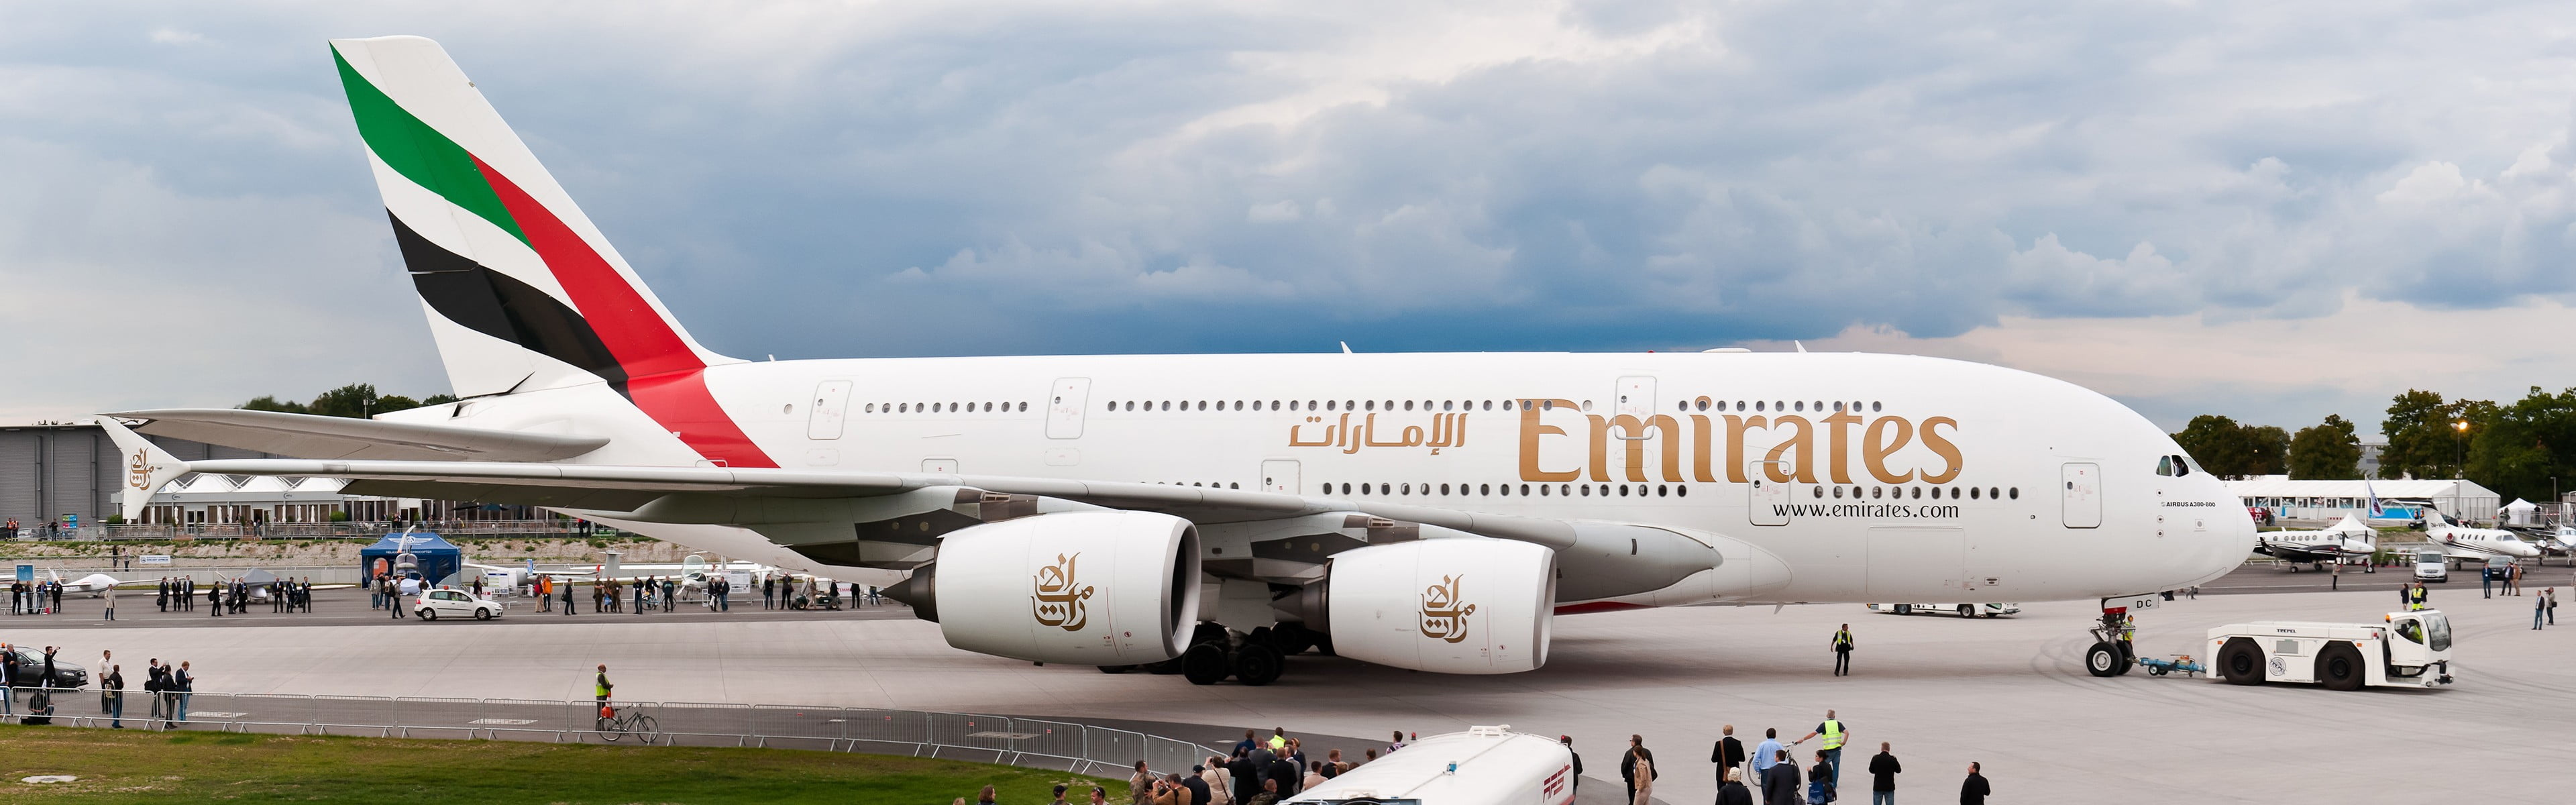 United Arab Emirates, Emirates A380, Aircraft wallpaper, HD, 3840x1200 Dual Screen Desktop